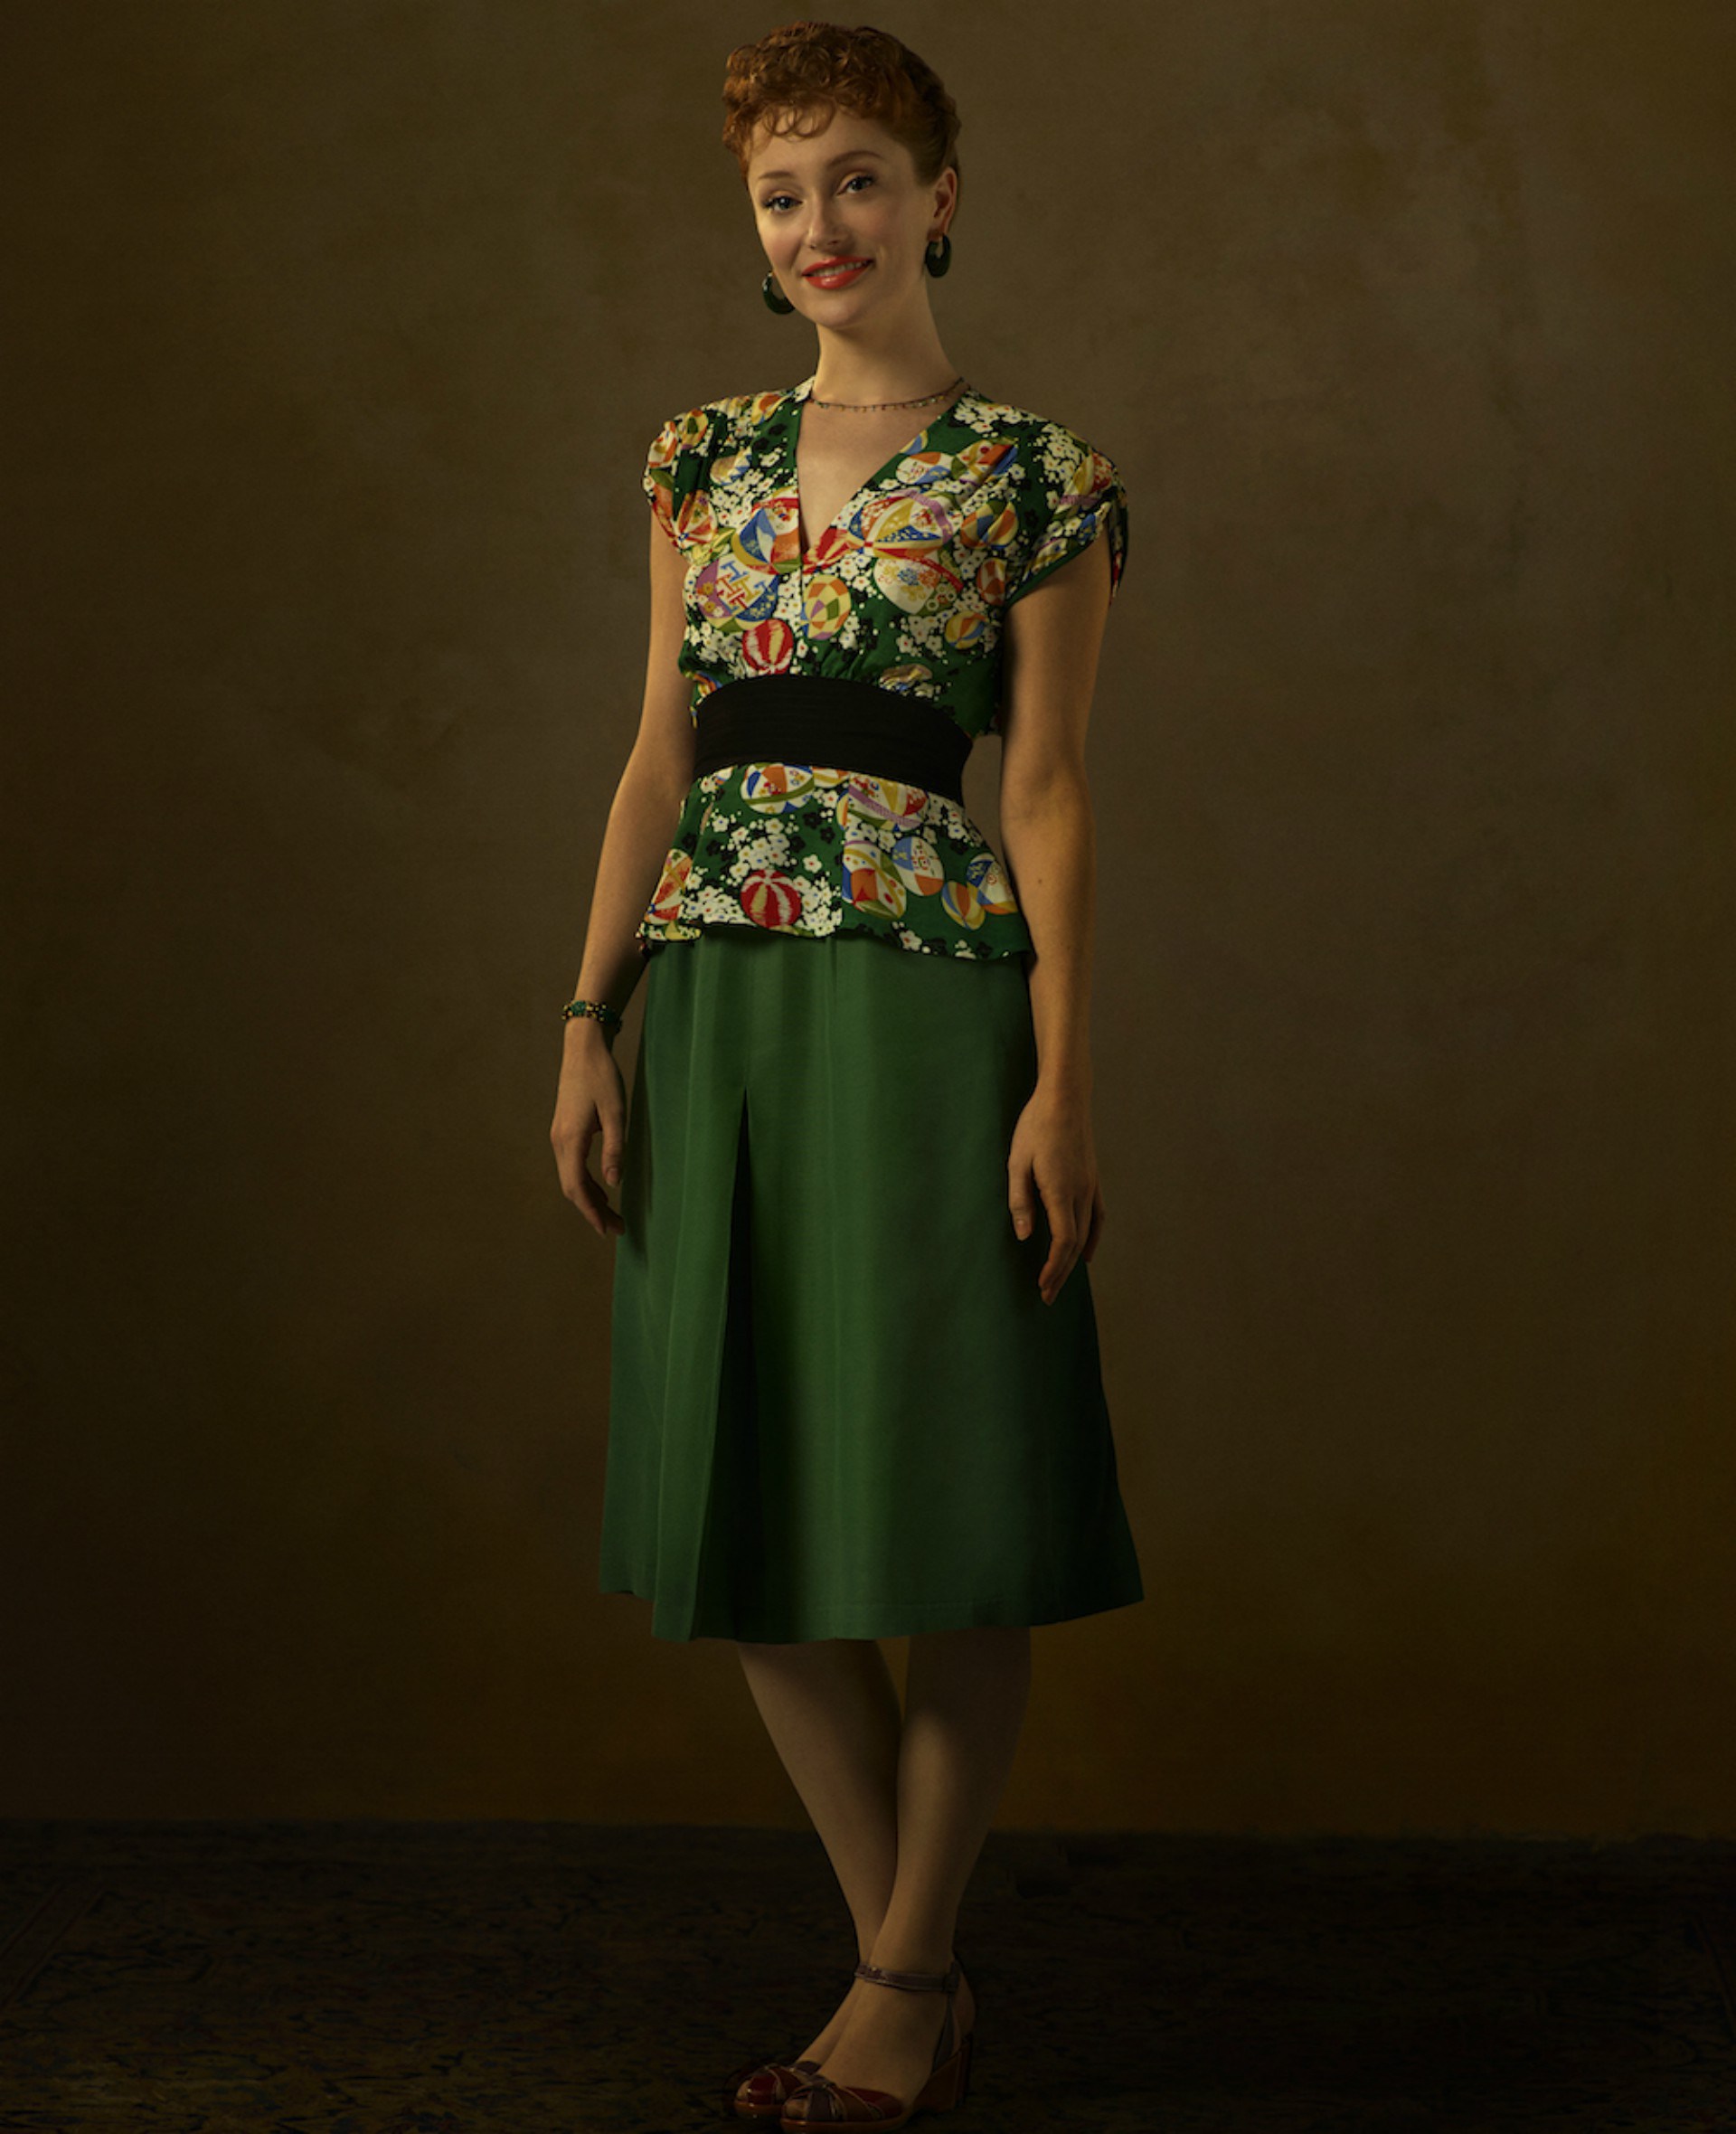 Agent Carter Ana Jarvis Actress - HD Wallpaper 